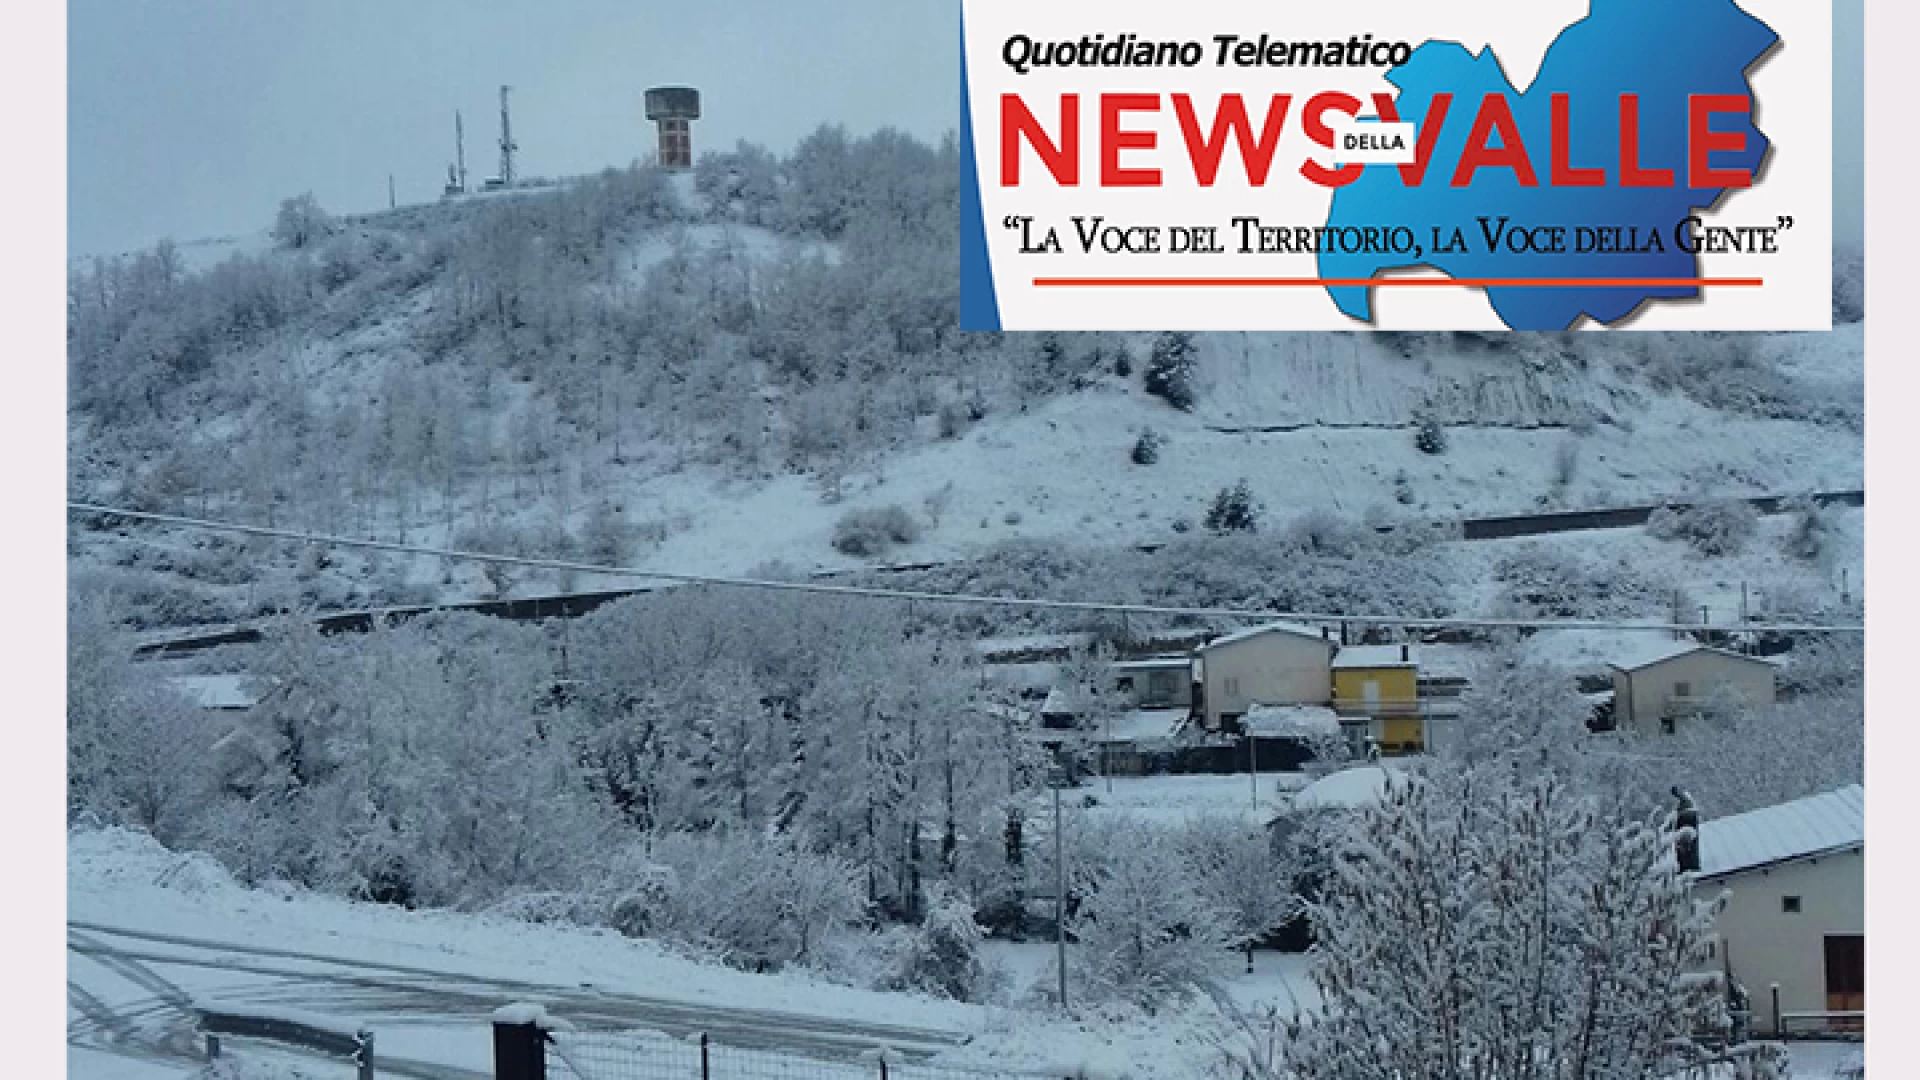 Meteo: arriva la neve nell’Alta Valle del Volturno. Il peggioramento annunciato è arrivato nella notte. Al confine con l’Abruzzo caduti diversi centimetri di coltre bianca.